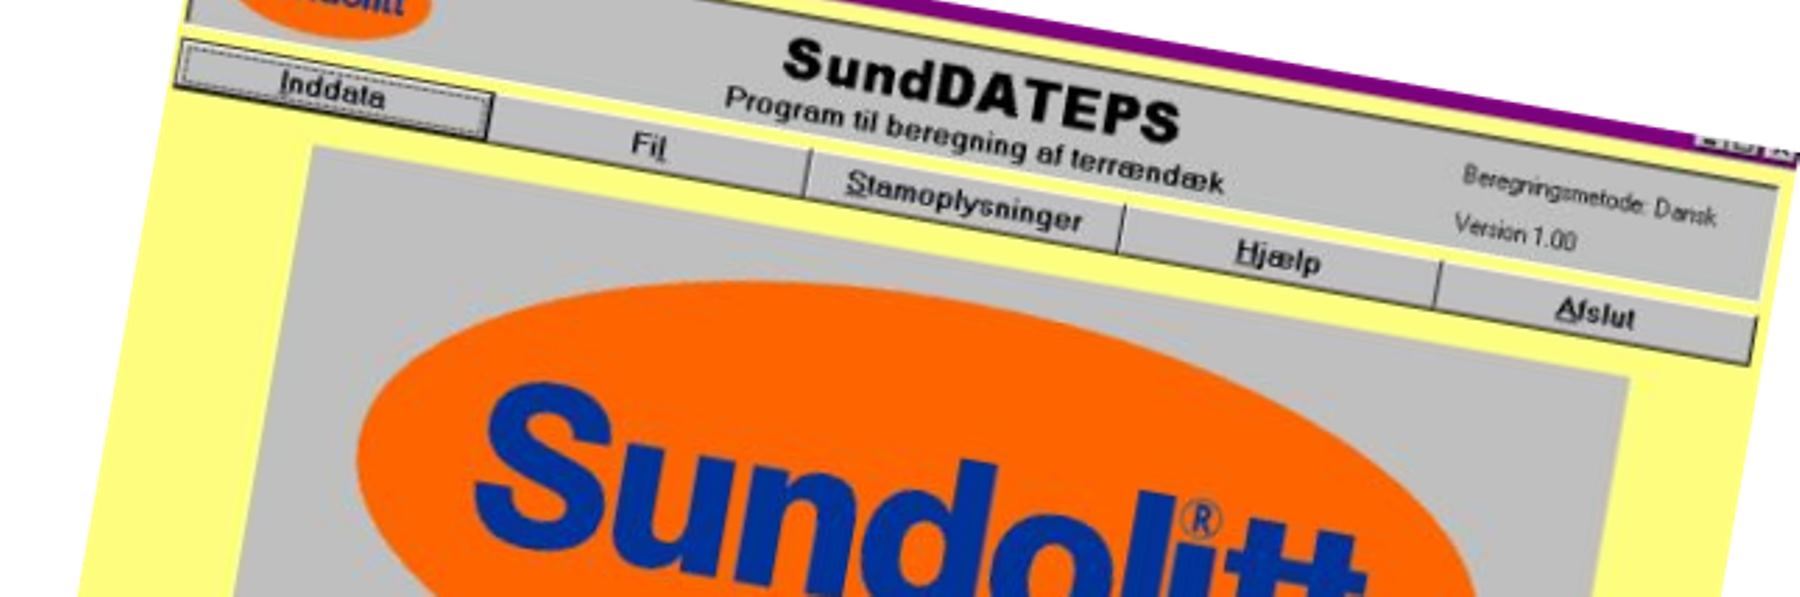 Beregningsprogram SundDATEPS